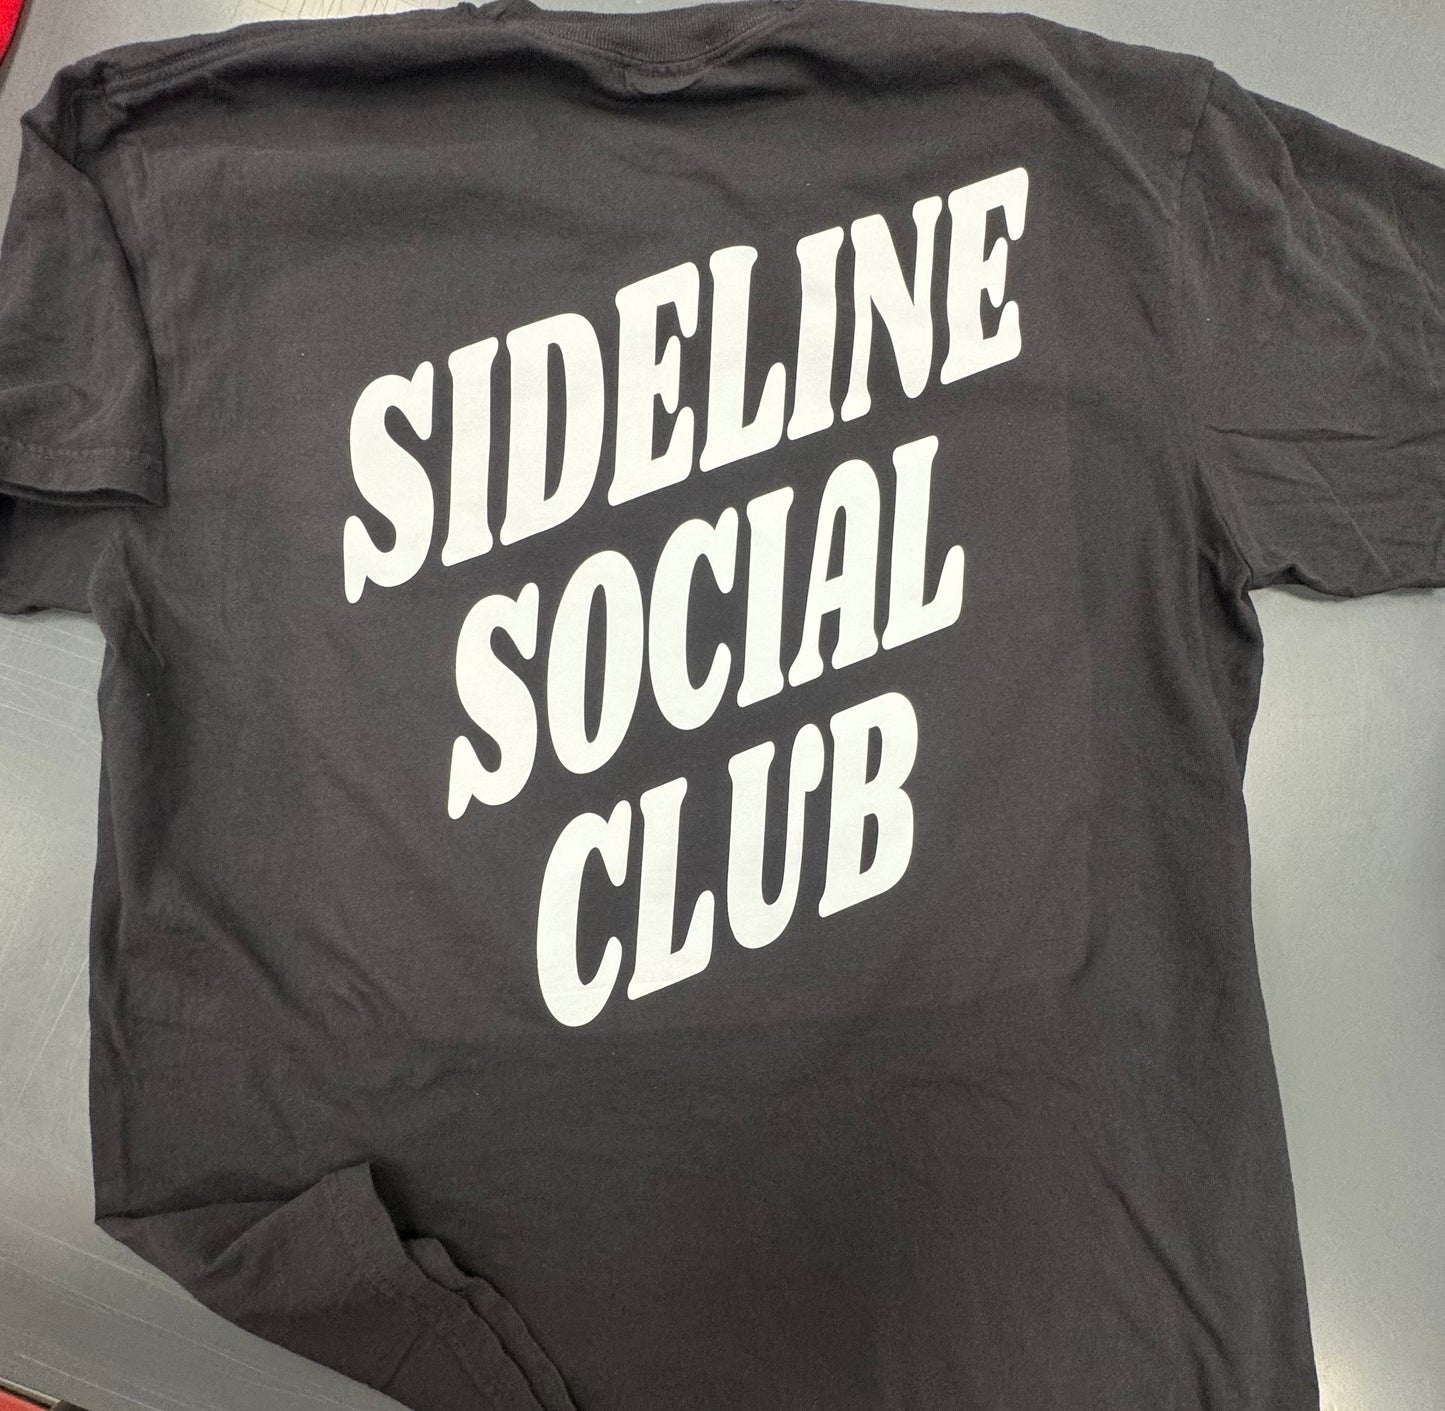 Sideline social club T-Shirt